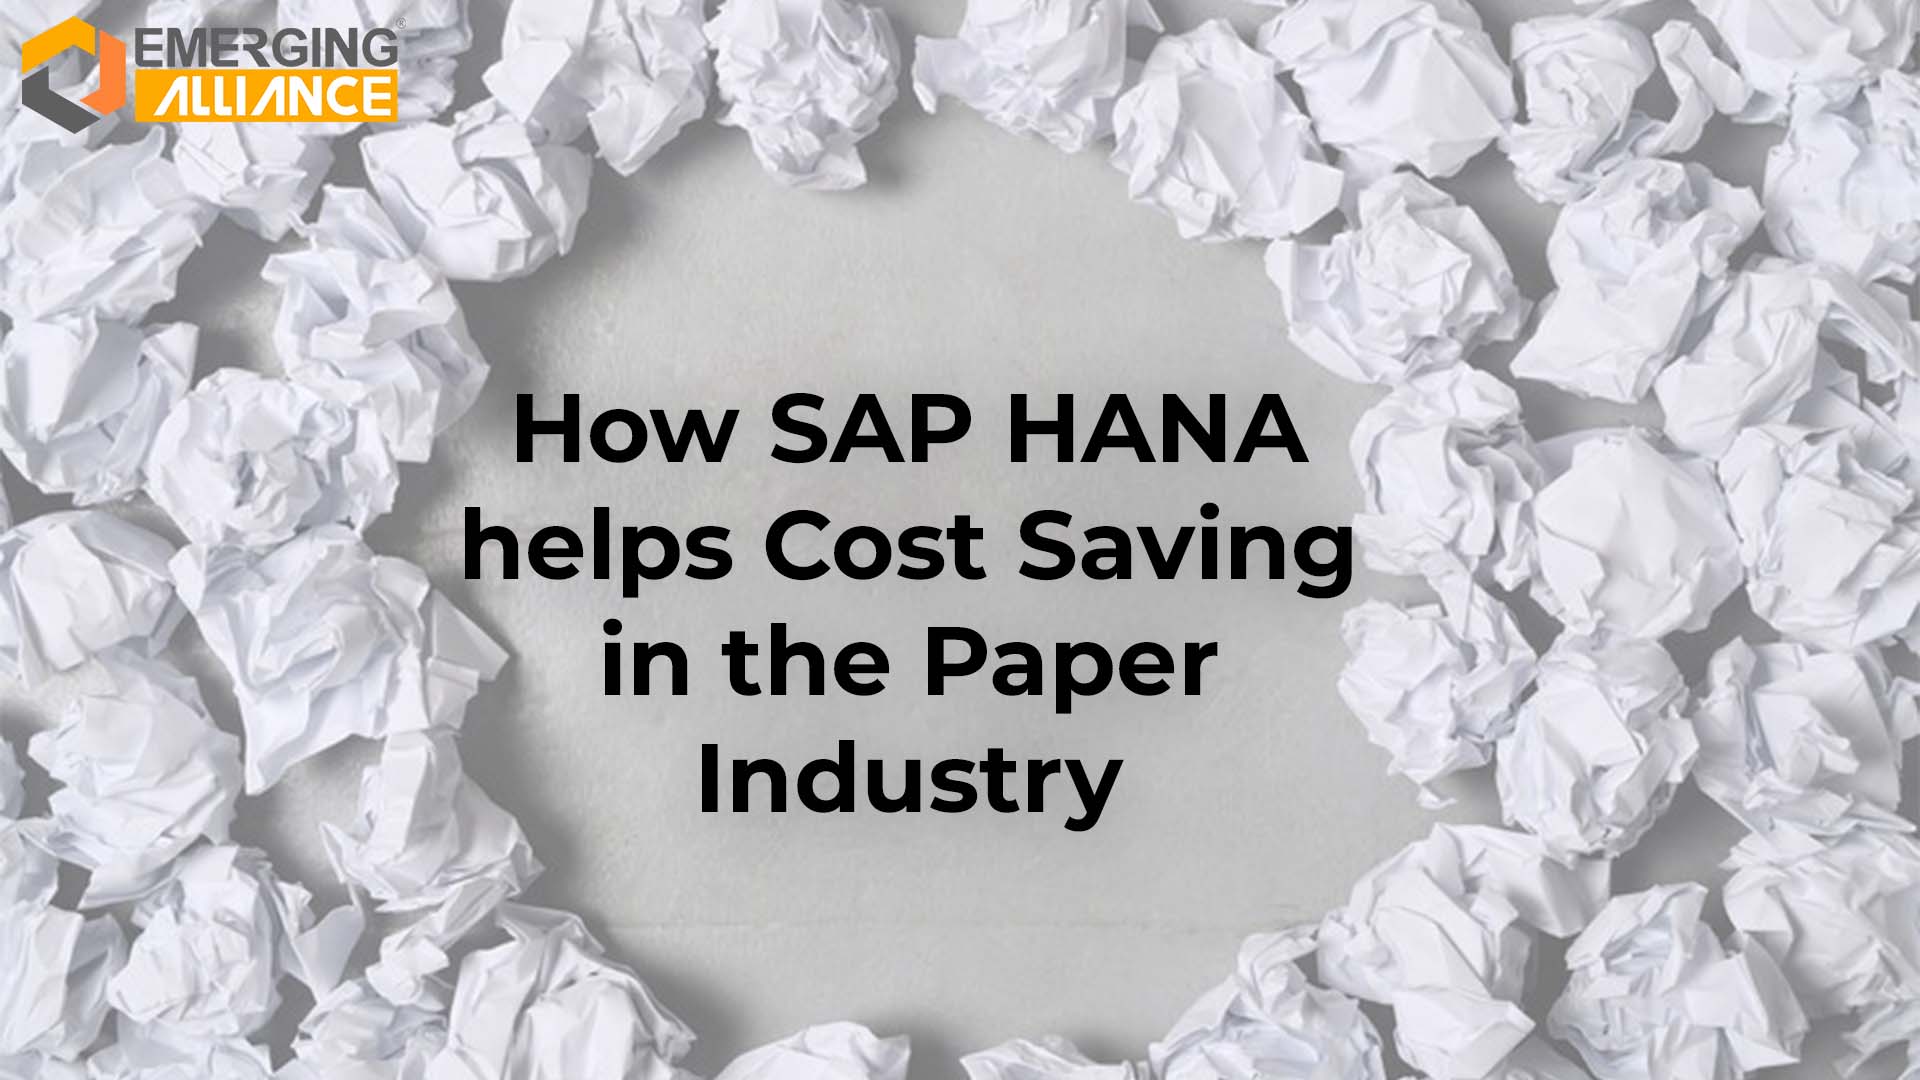 SAP HANA for Paper Industry